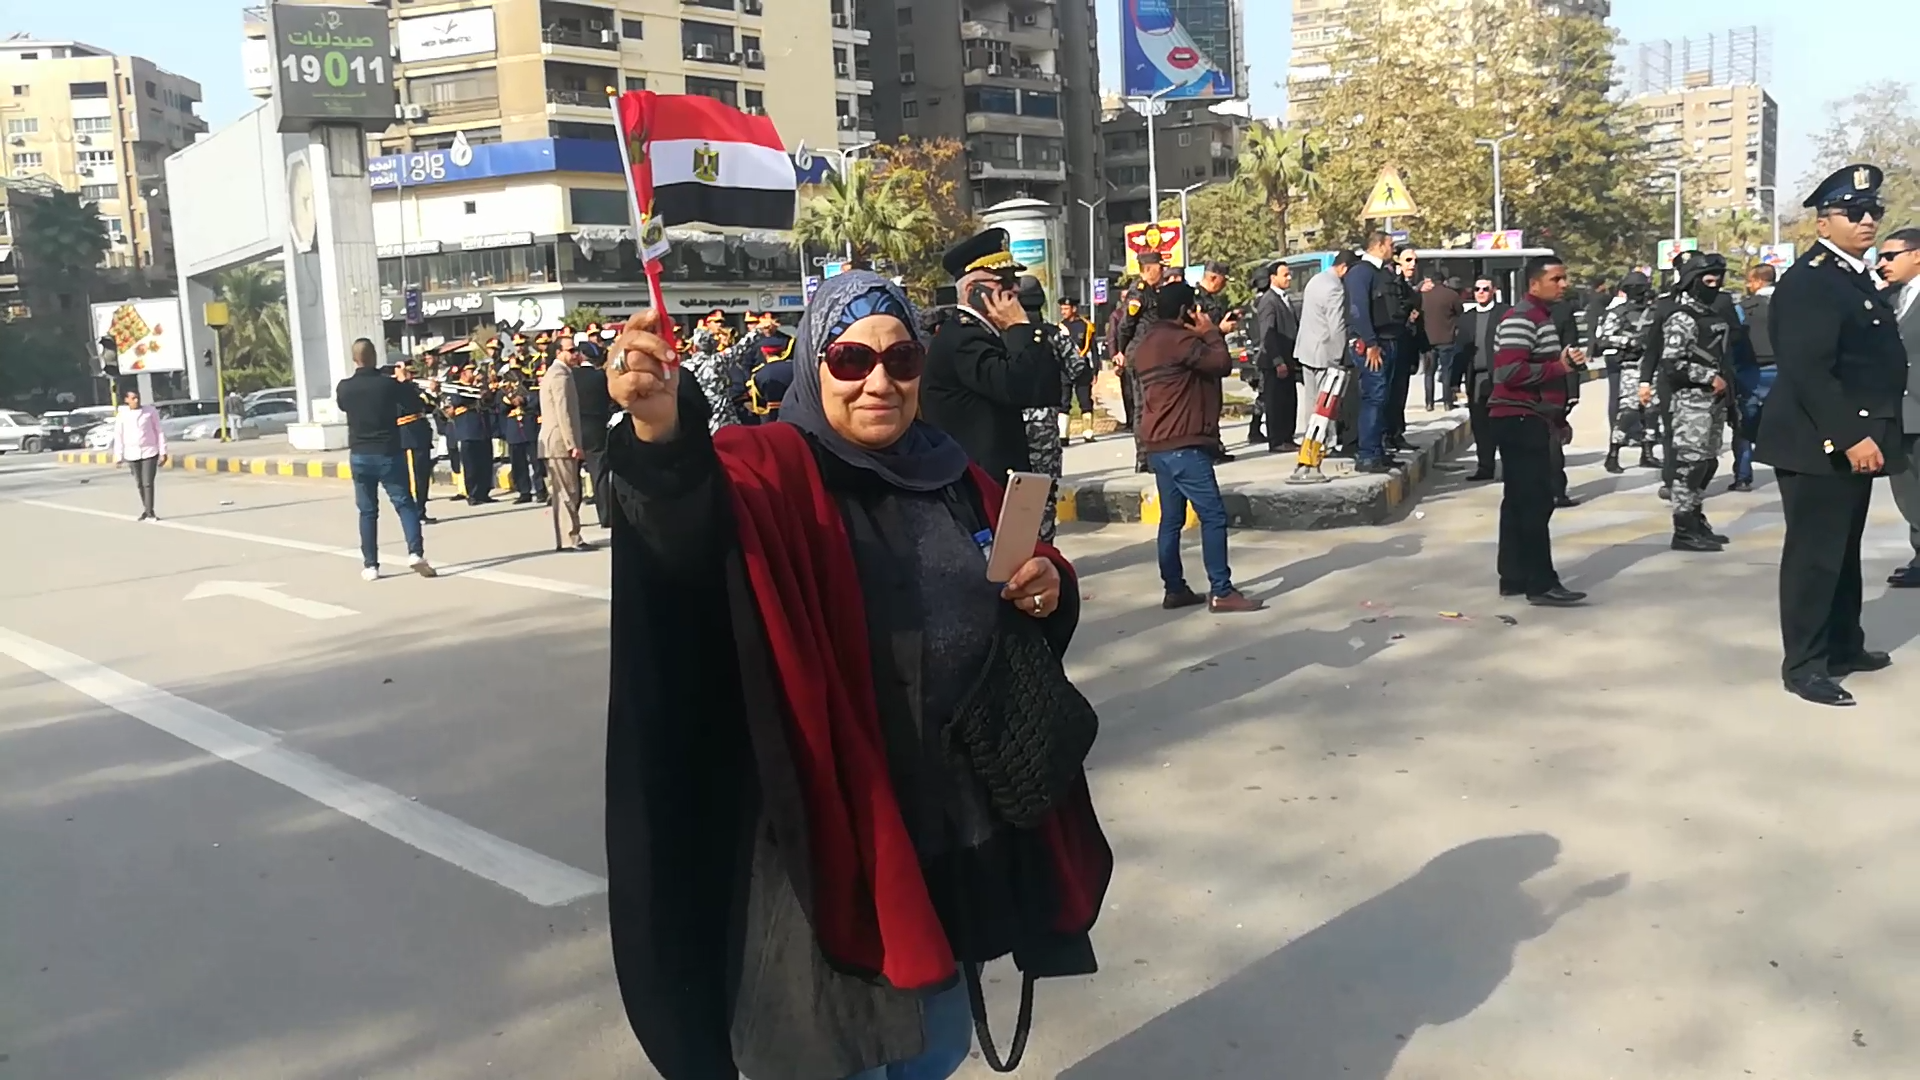  الشرطة بعيدهم بالورود والاعلام بميدان مصطفى محمود (10)